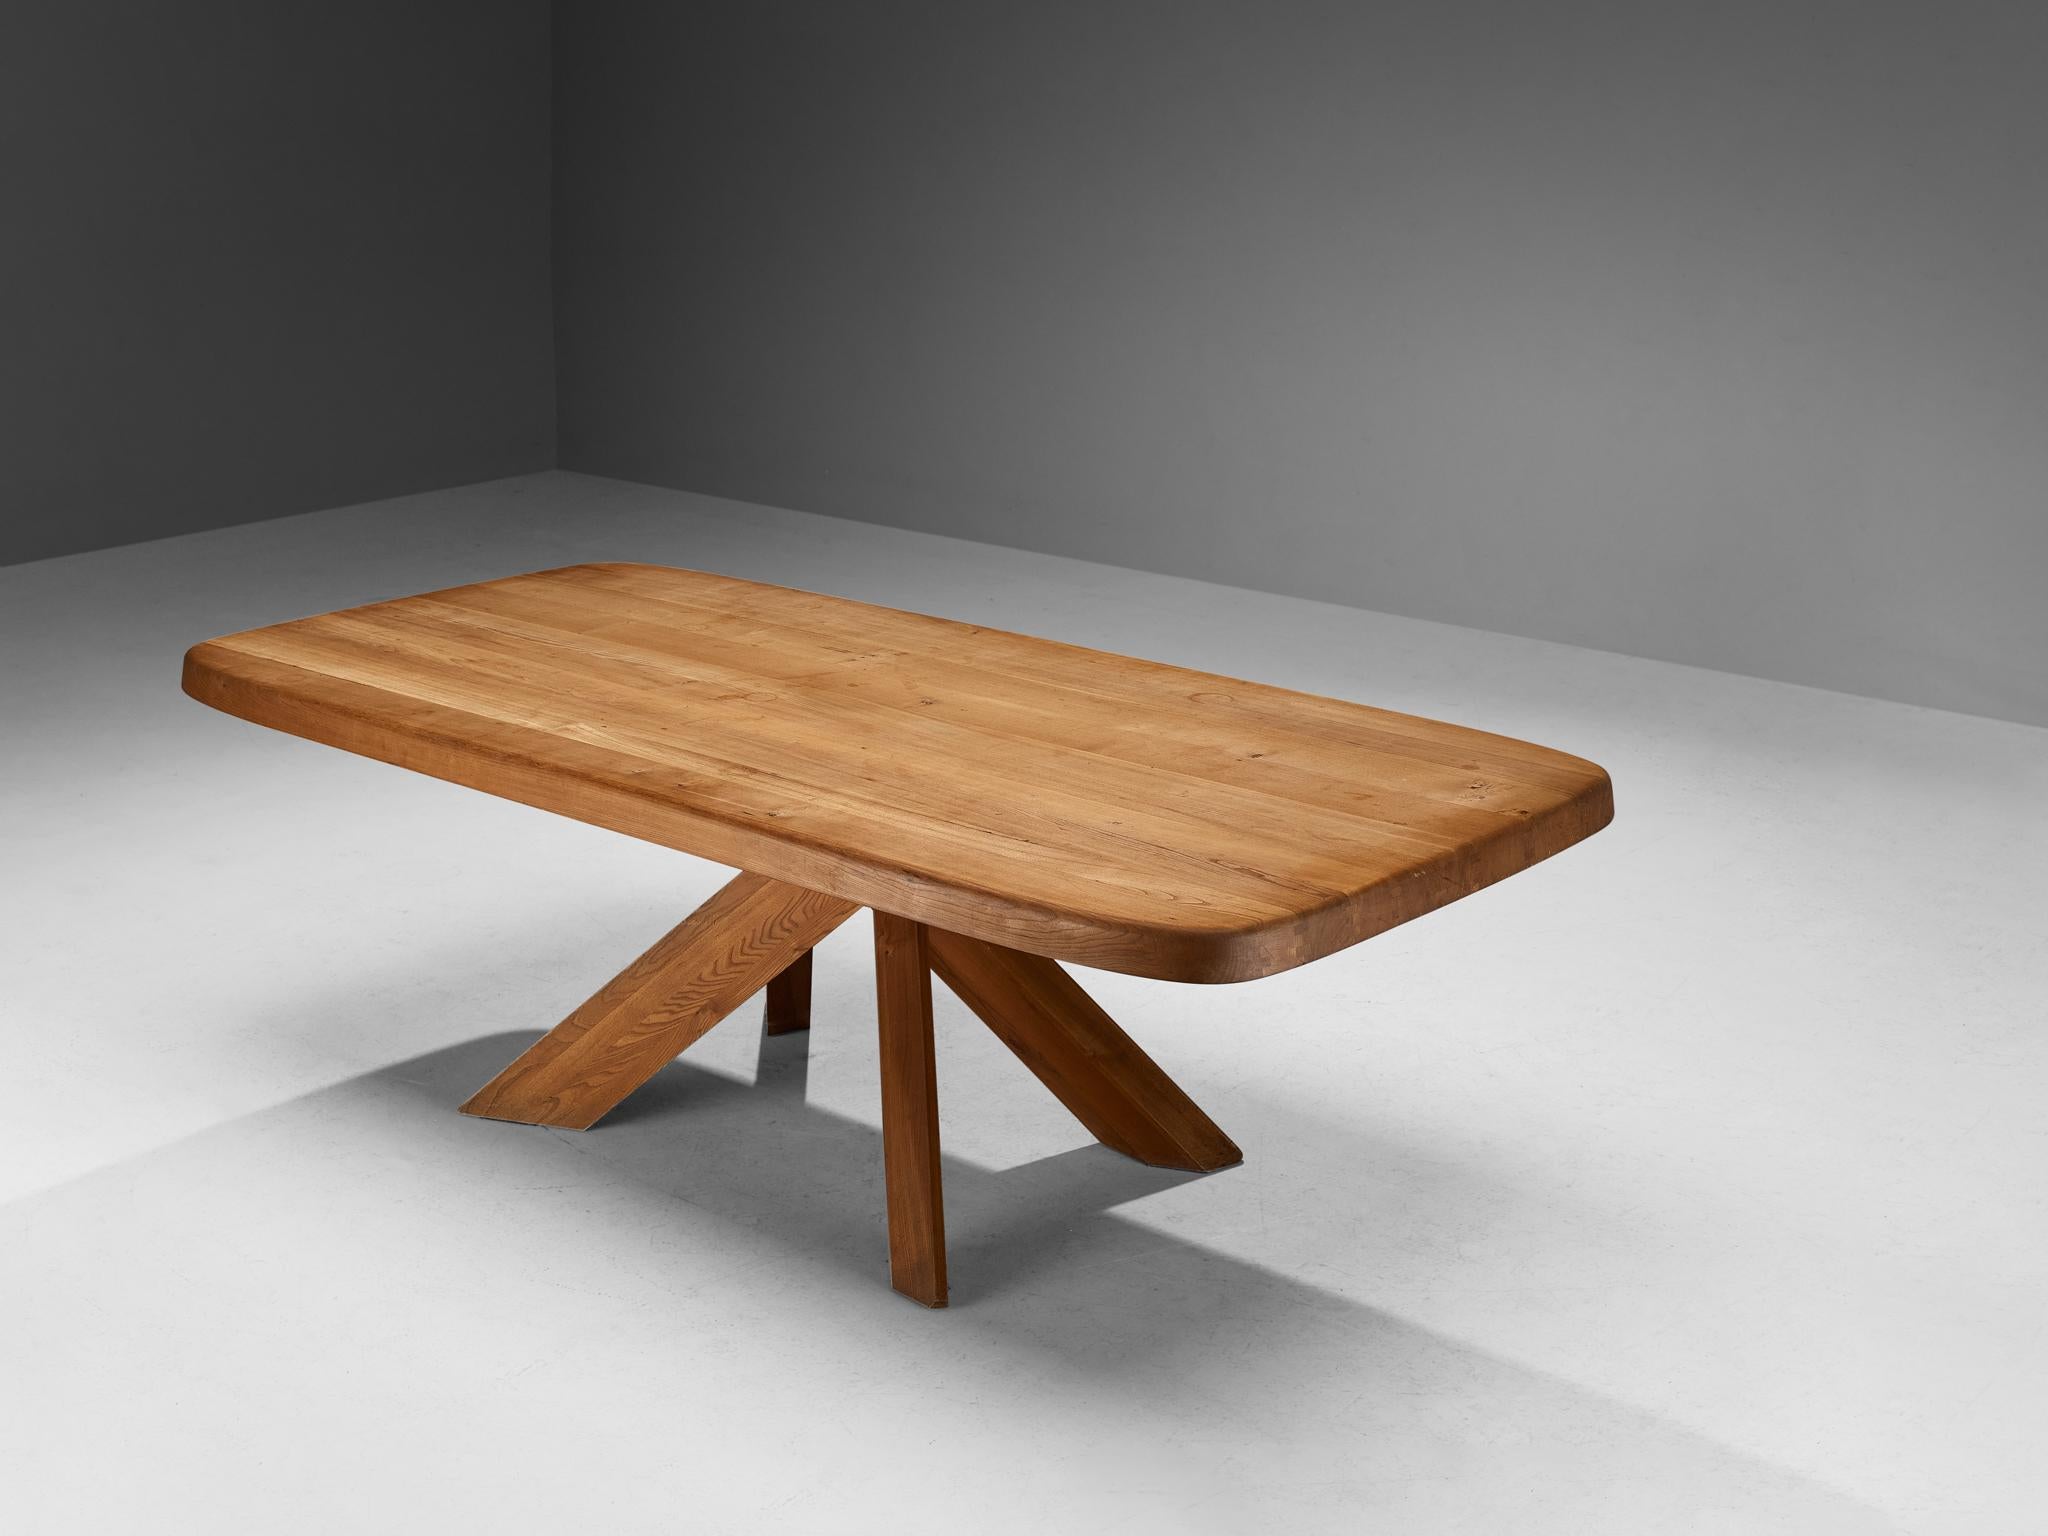 Pierre CIRCA, table de salle à manger modèle 'Aban' T35D, orme massif, France, vers 1972 

Ce modèle est une première édition créée par Pierre Chapo. La conception et la construction de base, ainsi que l'utilisation de bois d'orme massif,